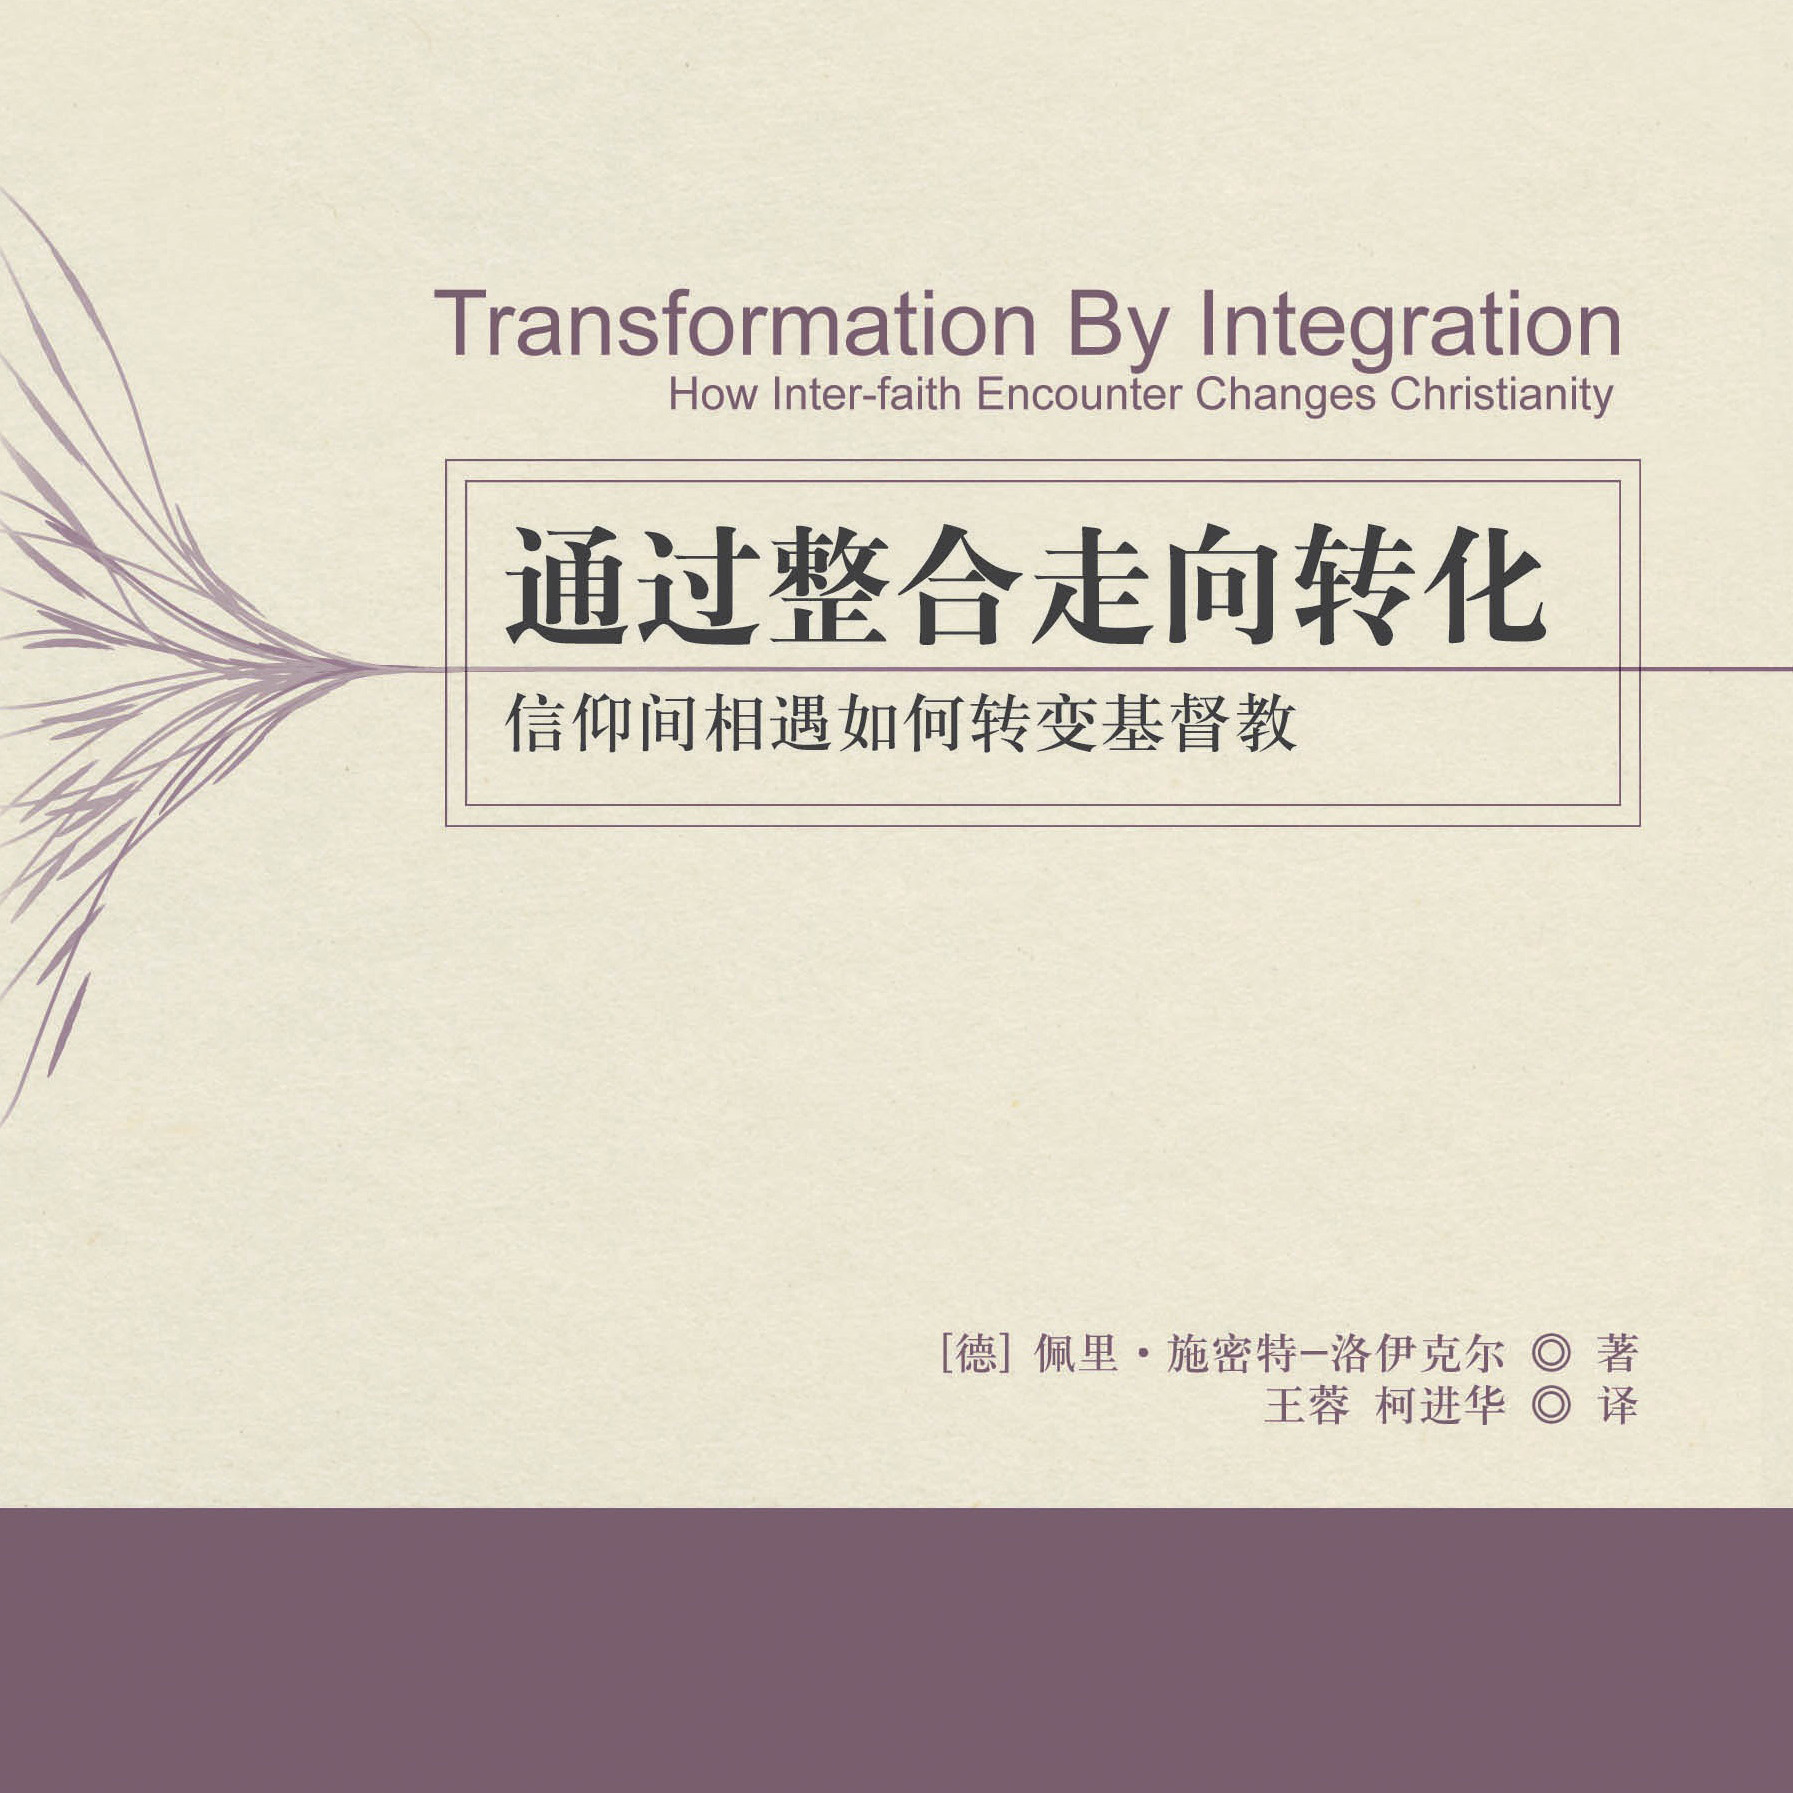 News Buch Schmidt-leukel Transformation Chinesisch 1 1